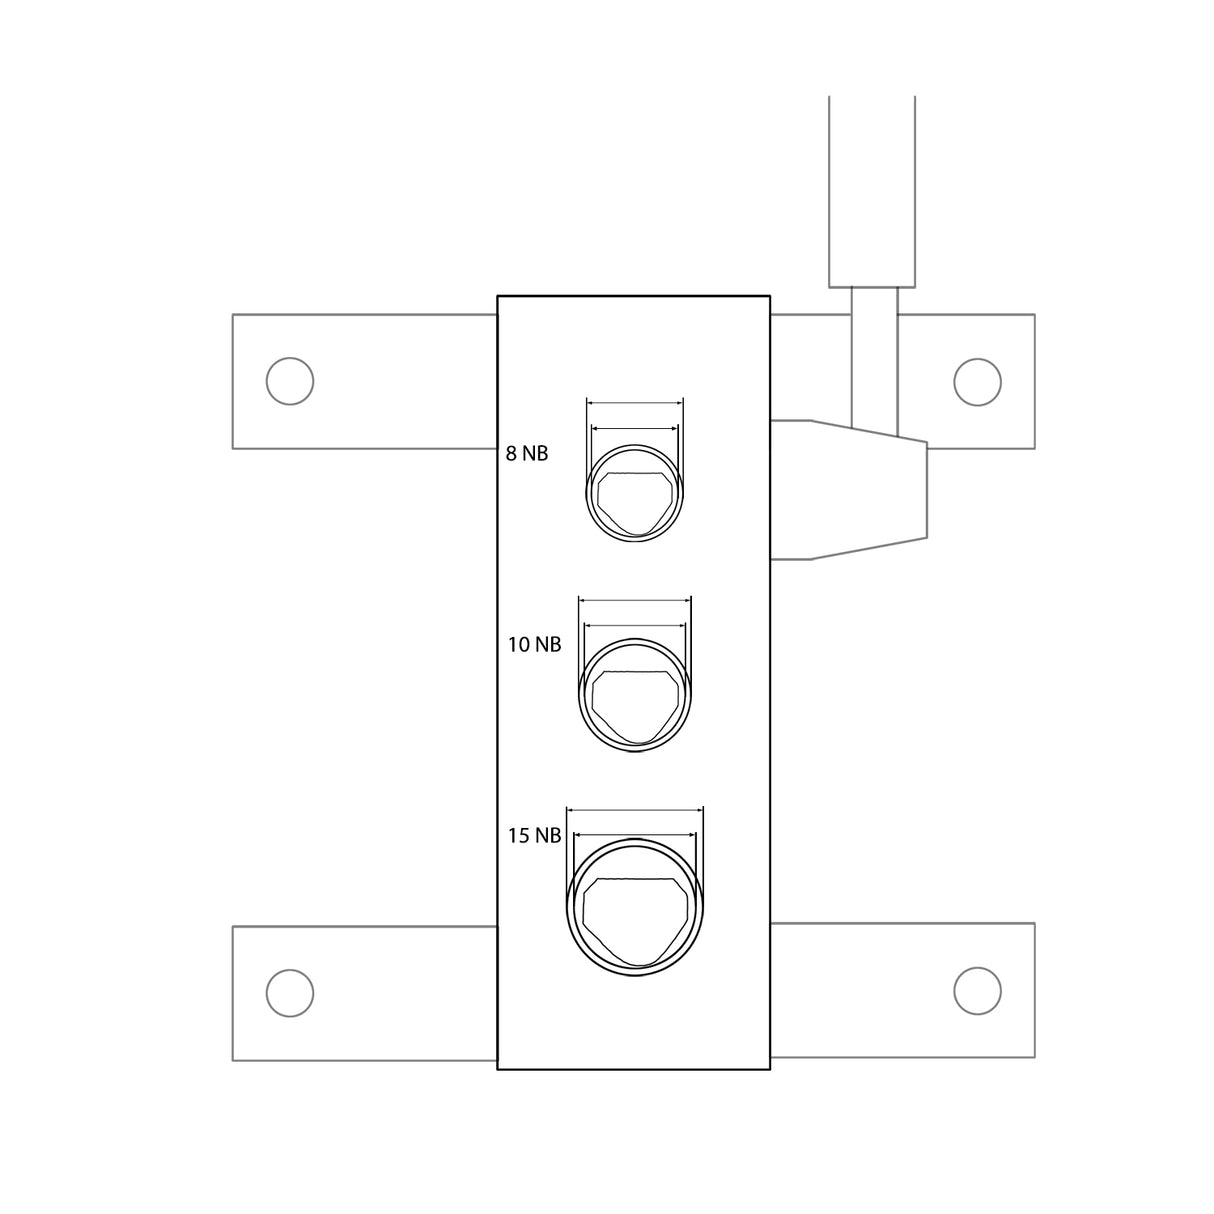 KANG Industrial RA-1 Manual Pipe Notcher, 8NB, 10NB, 15NB , High Precision Pipe Notcher